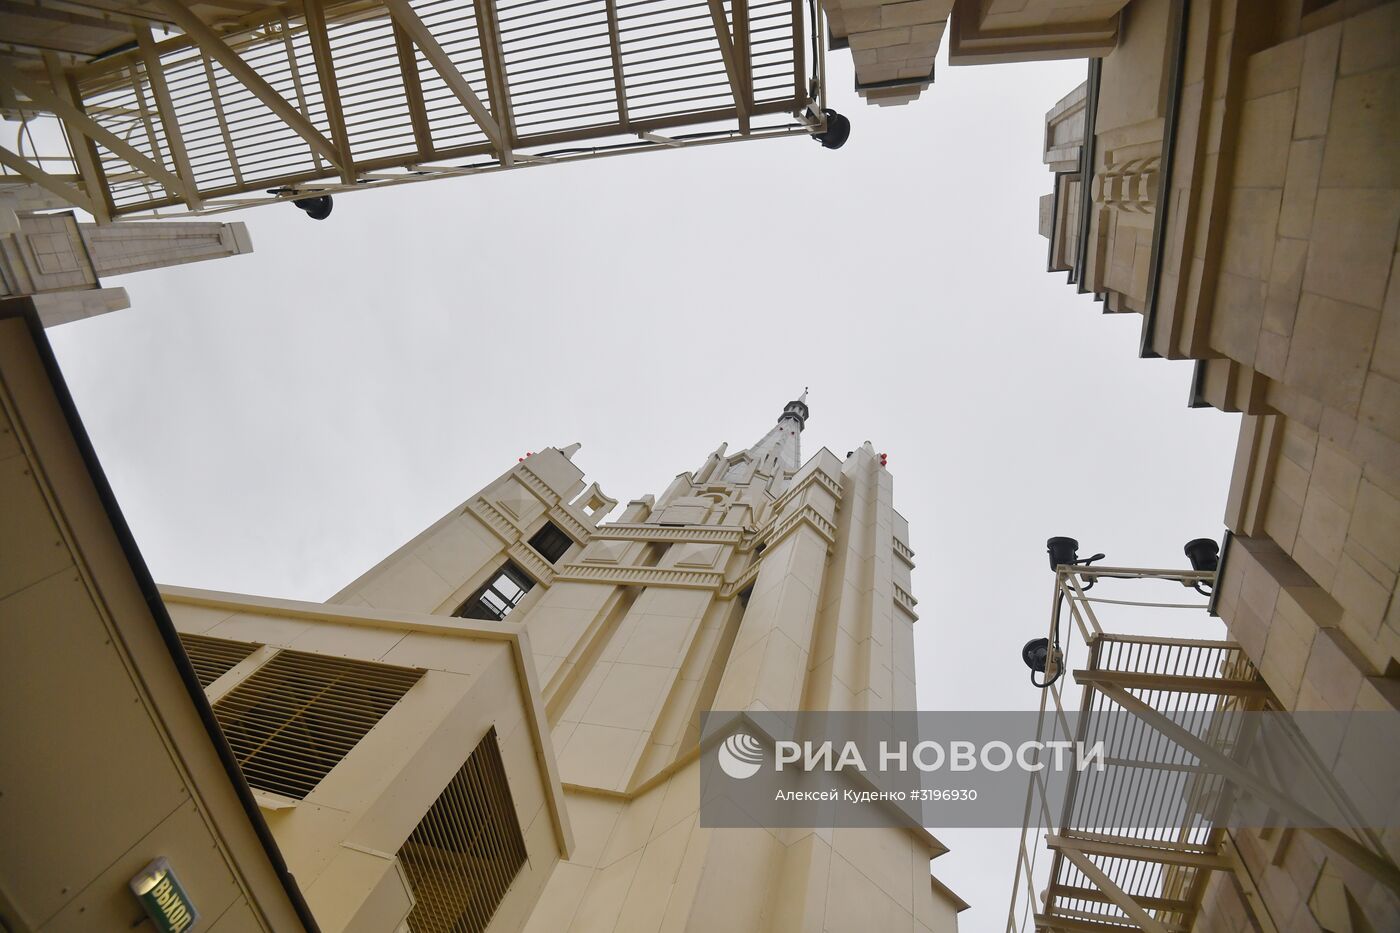 Завершение реконструкции шпиля здания МИД РФ